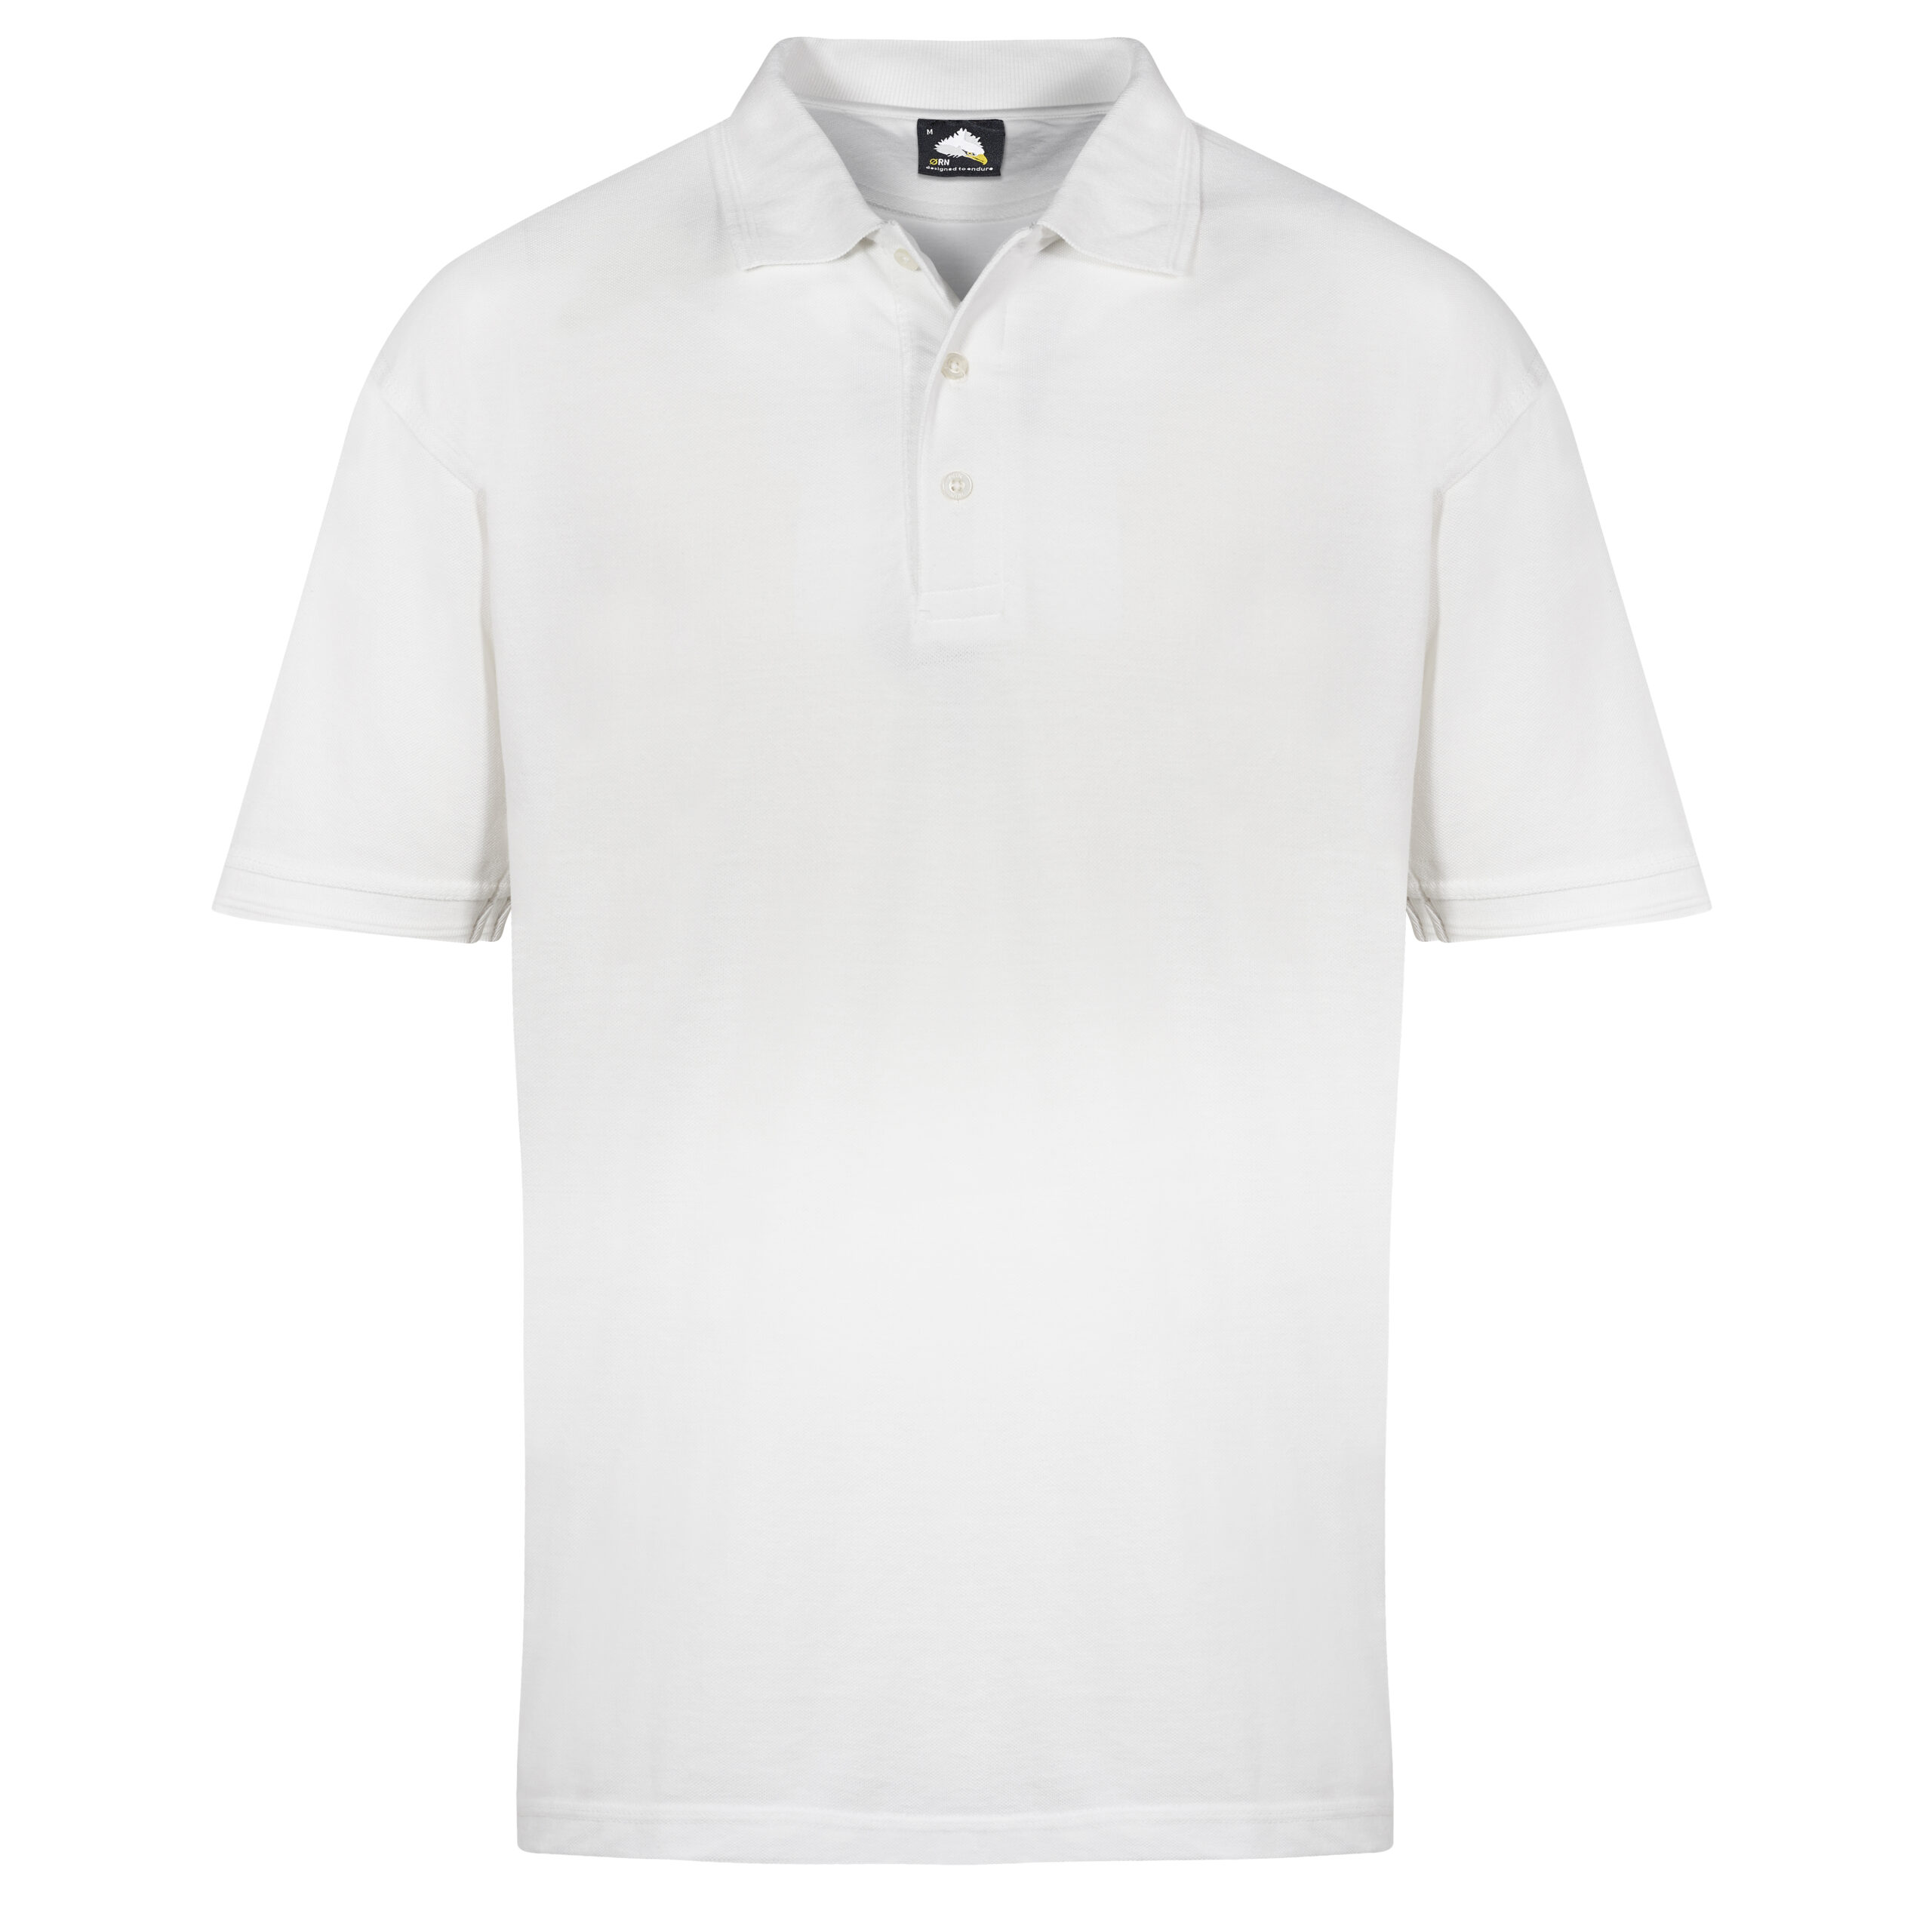 Premium Poly Cotton Pique Polo Shirt - Protective Wear Supplies